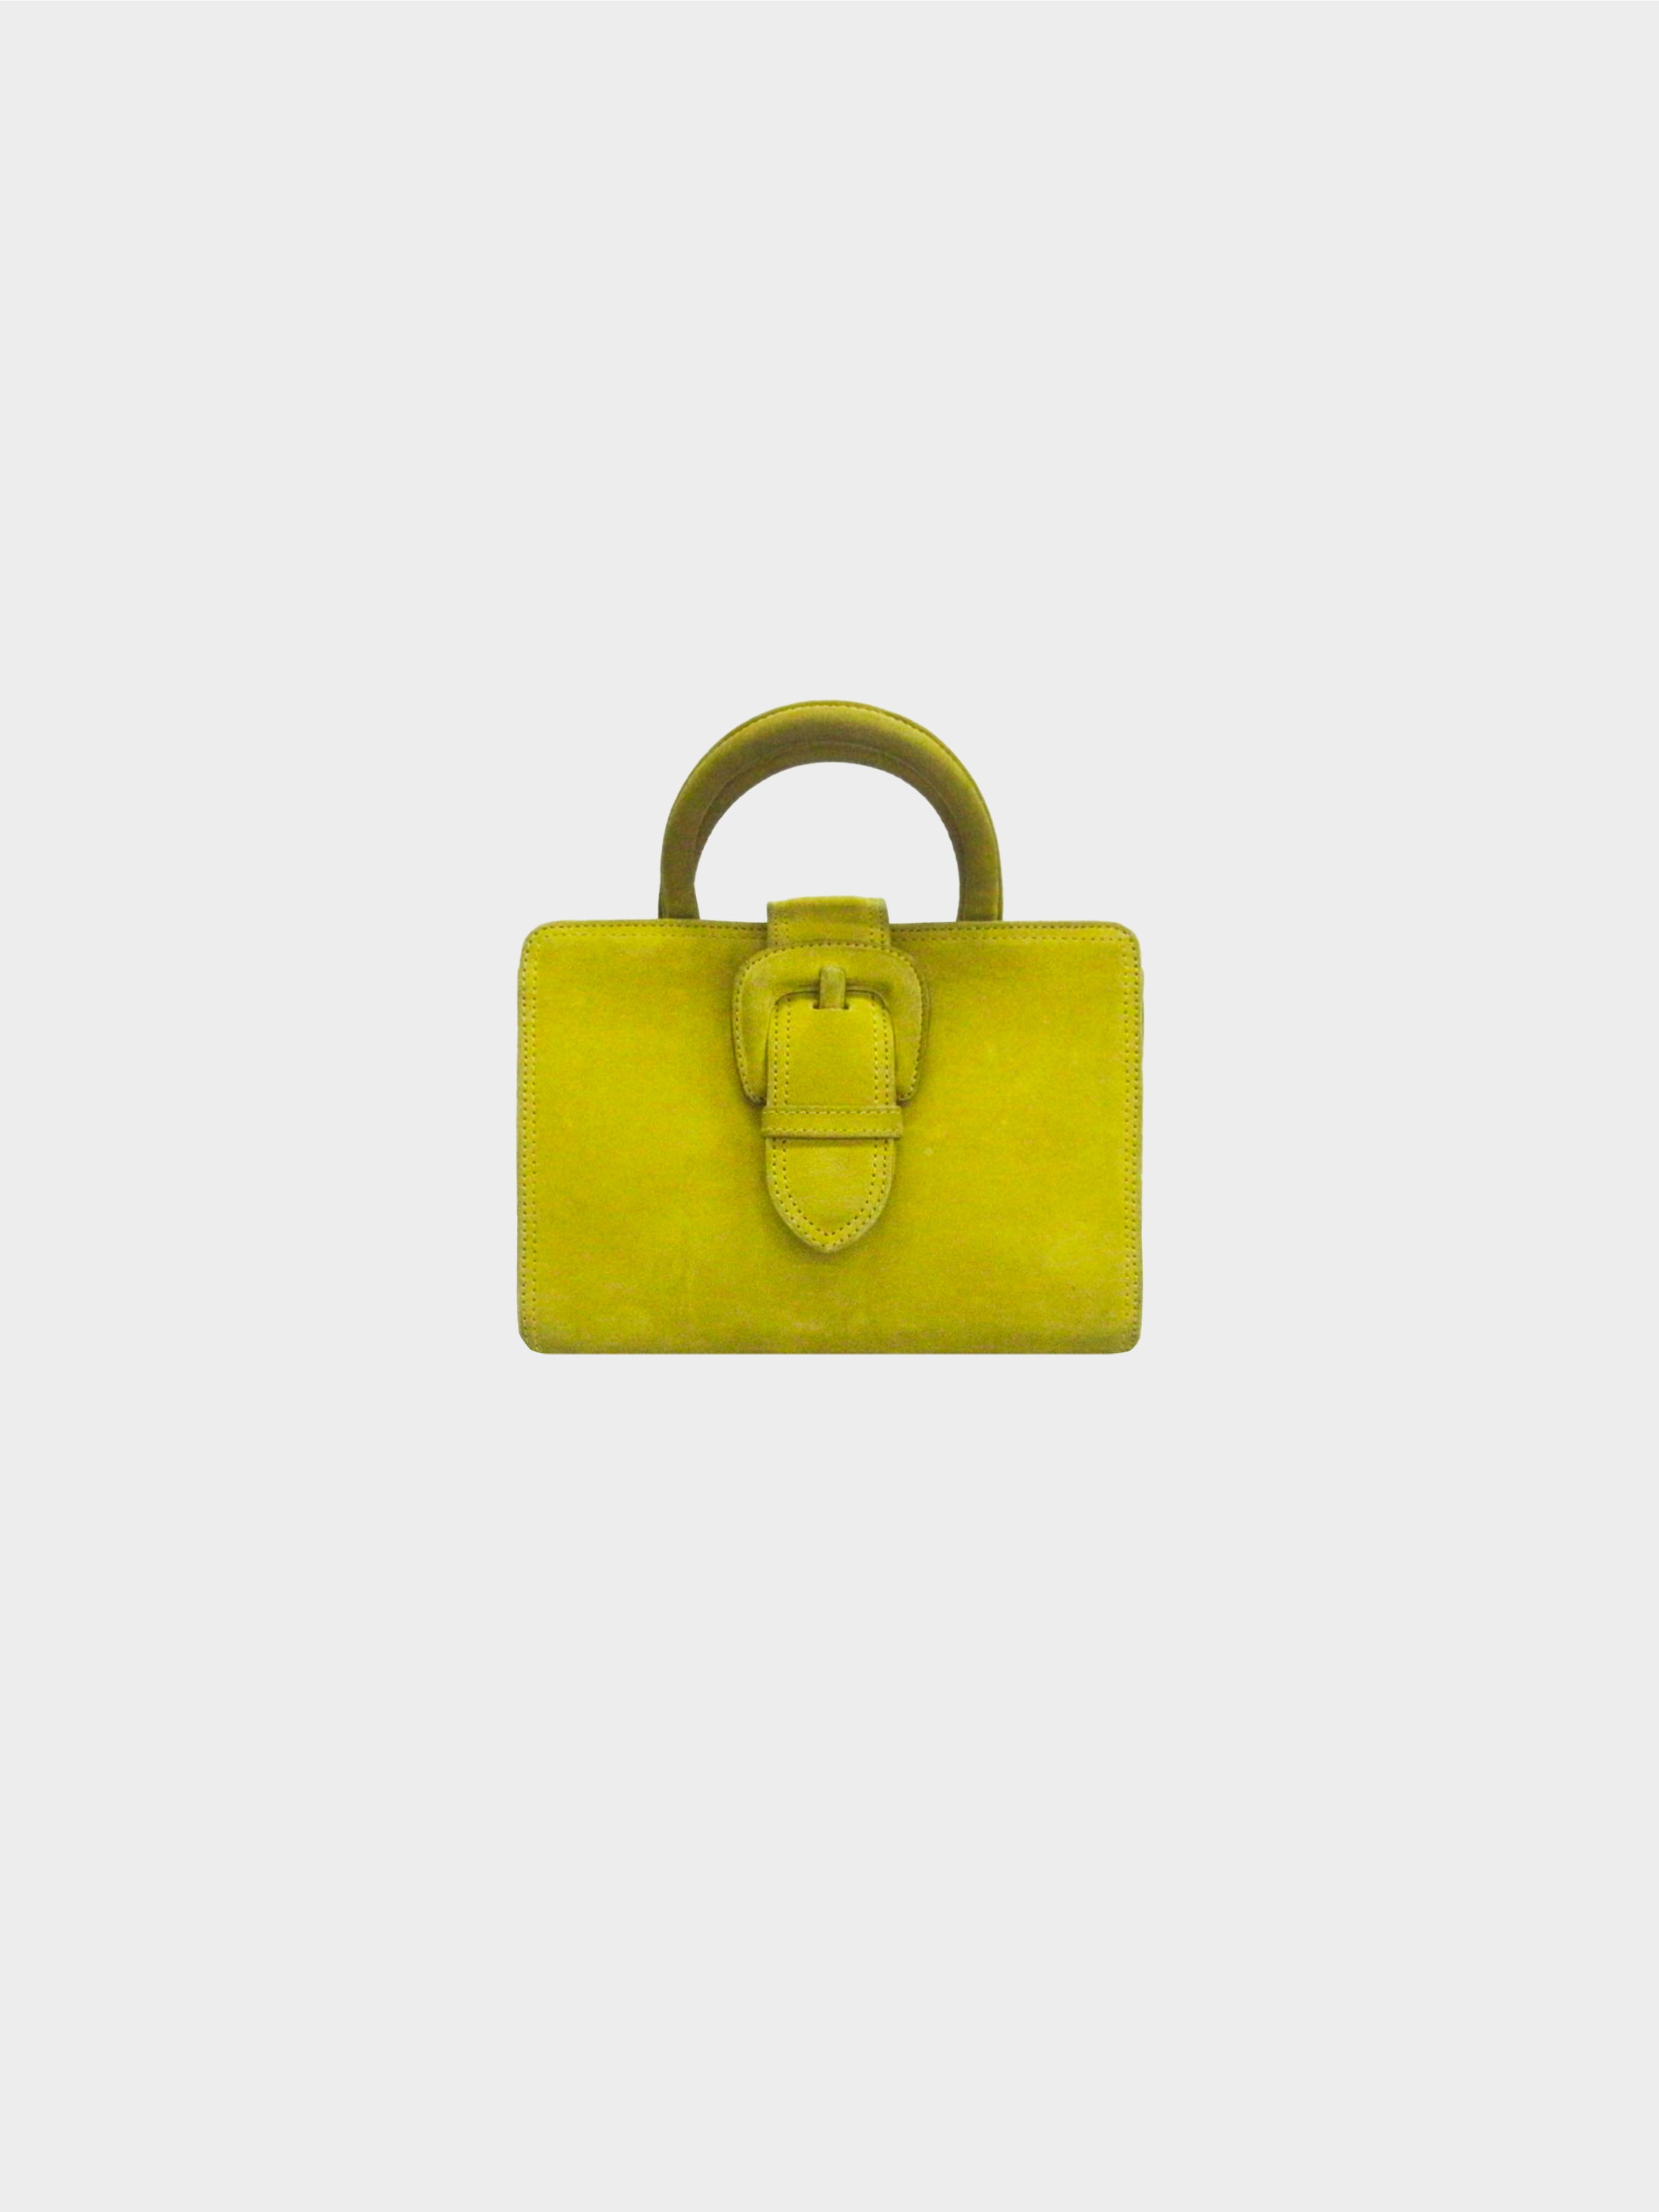 Jean Paul Gaultier 2000s Lime Suede Mini Bag